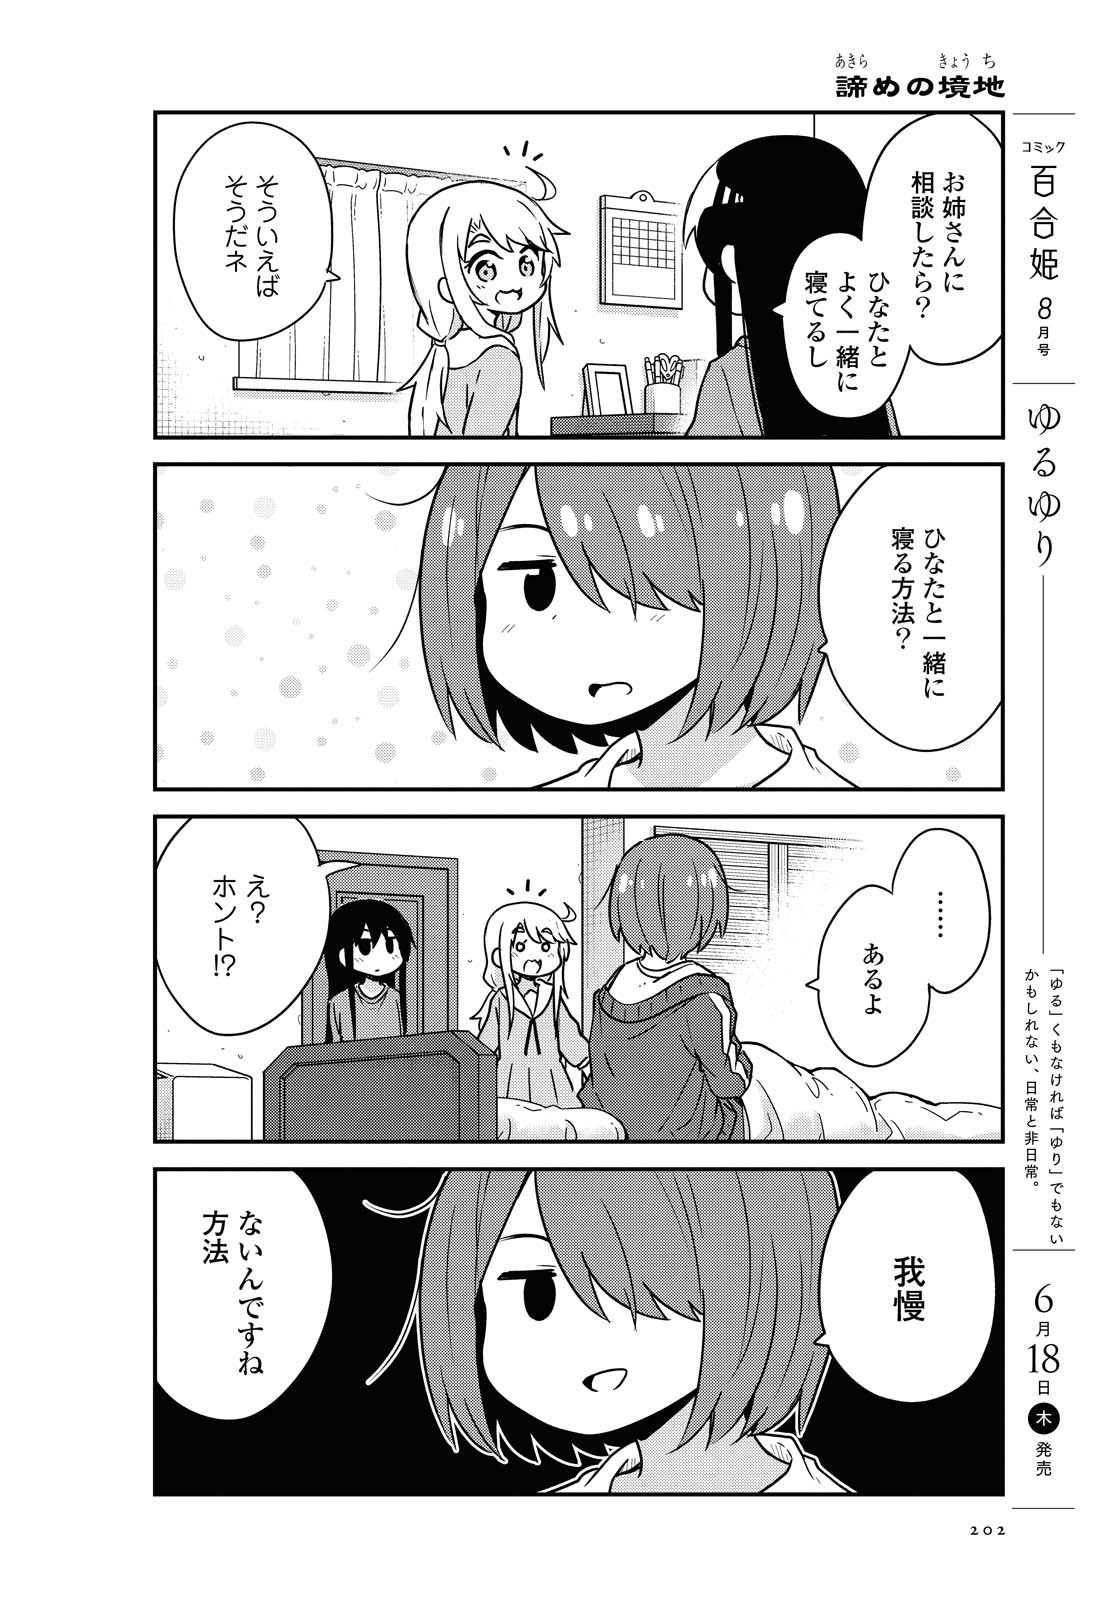 Watashi ni Tenshi ga Maiorita! - Chapter 66 - Page 4